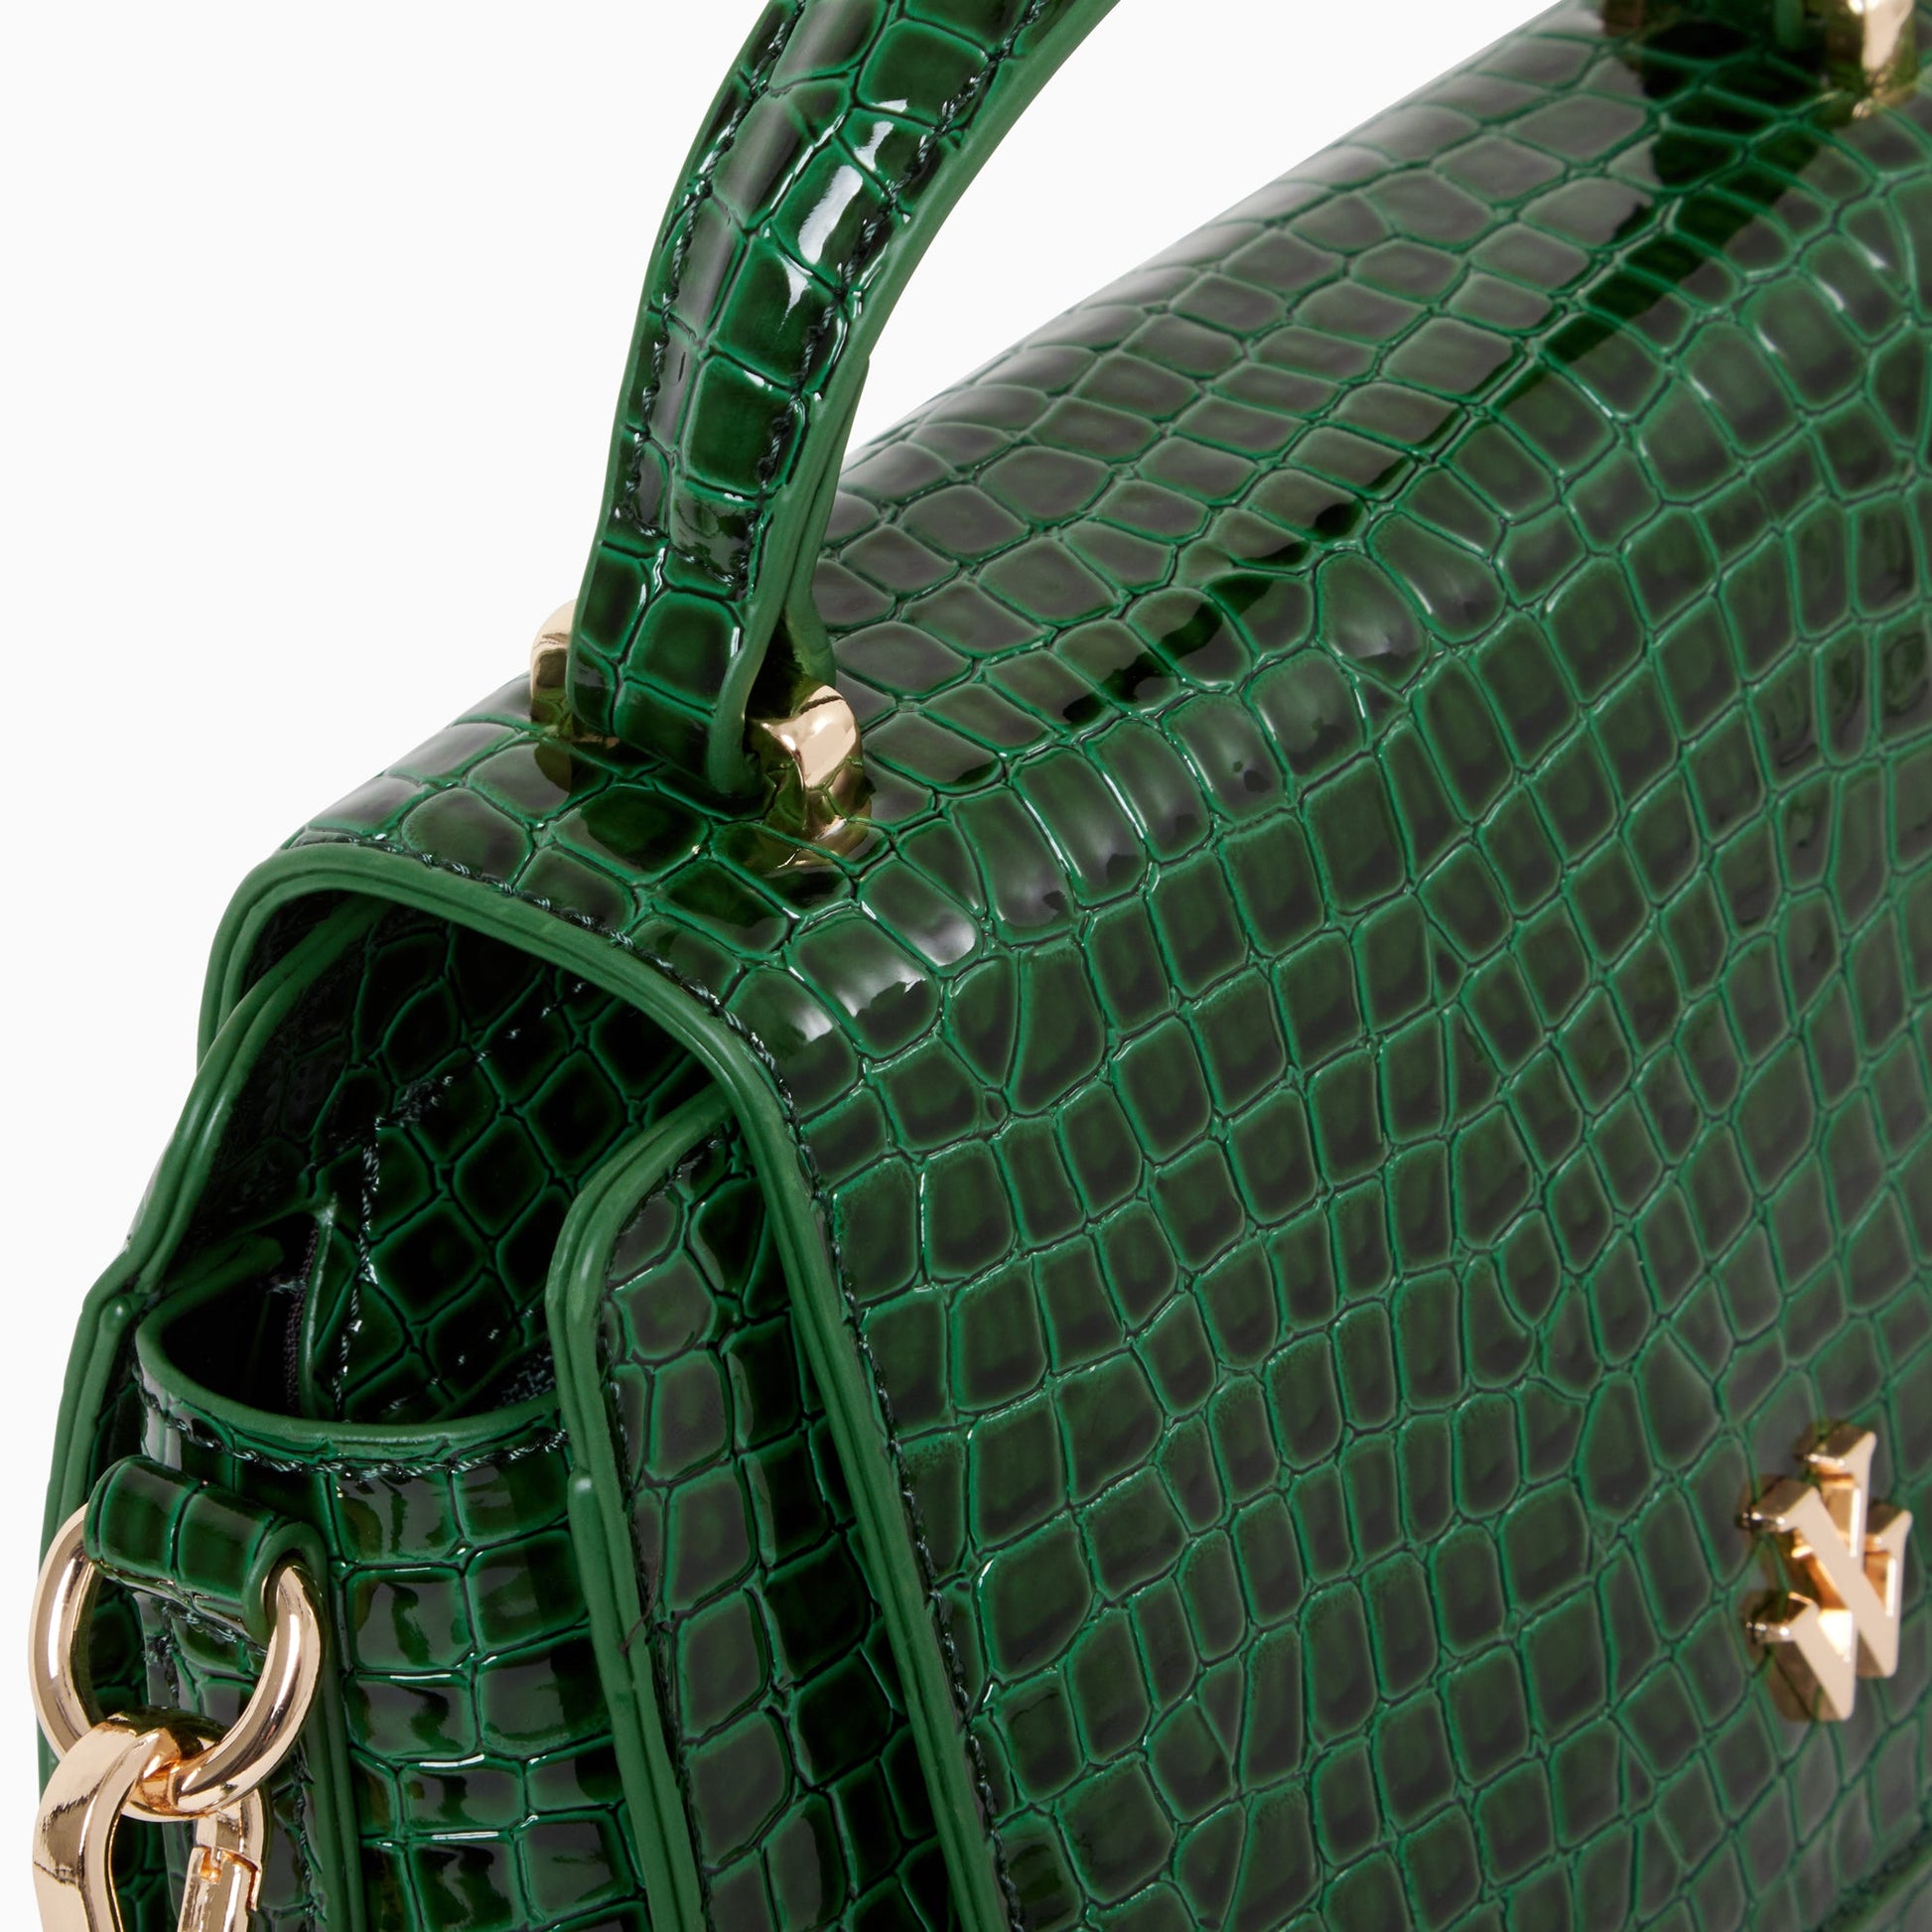 Petit sac à main femme vert Vanessa Wu effet crocodile verni à poignée et bandoulière